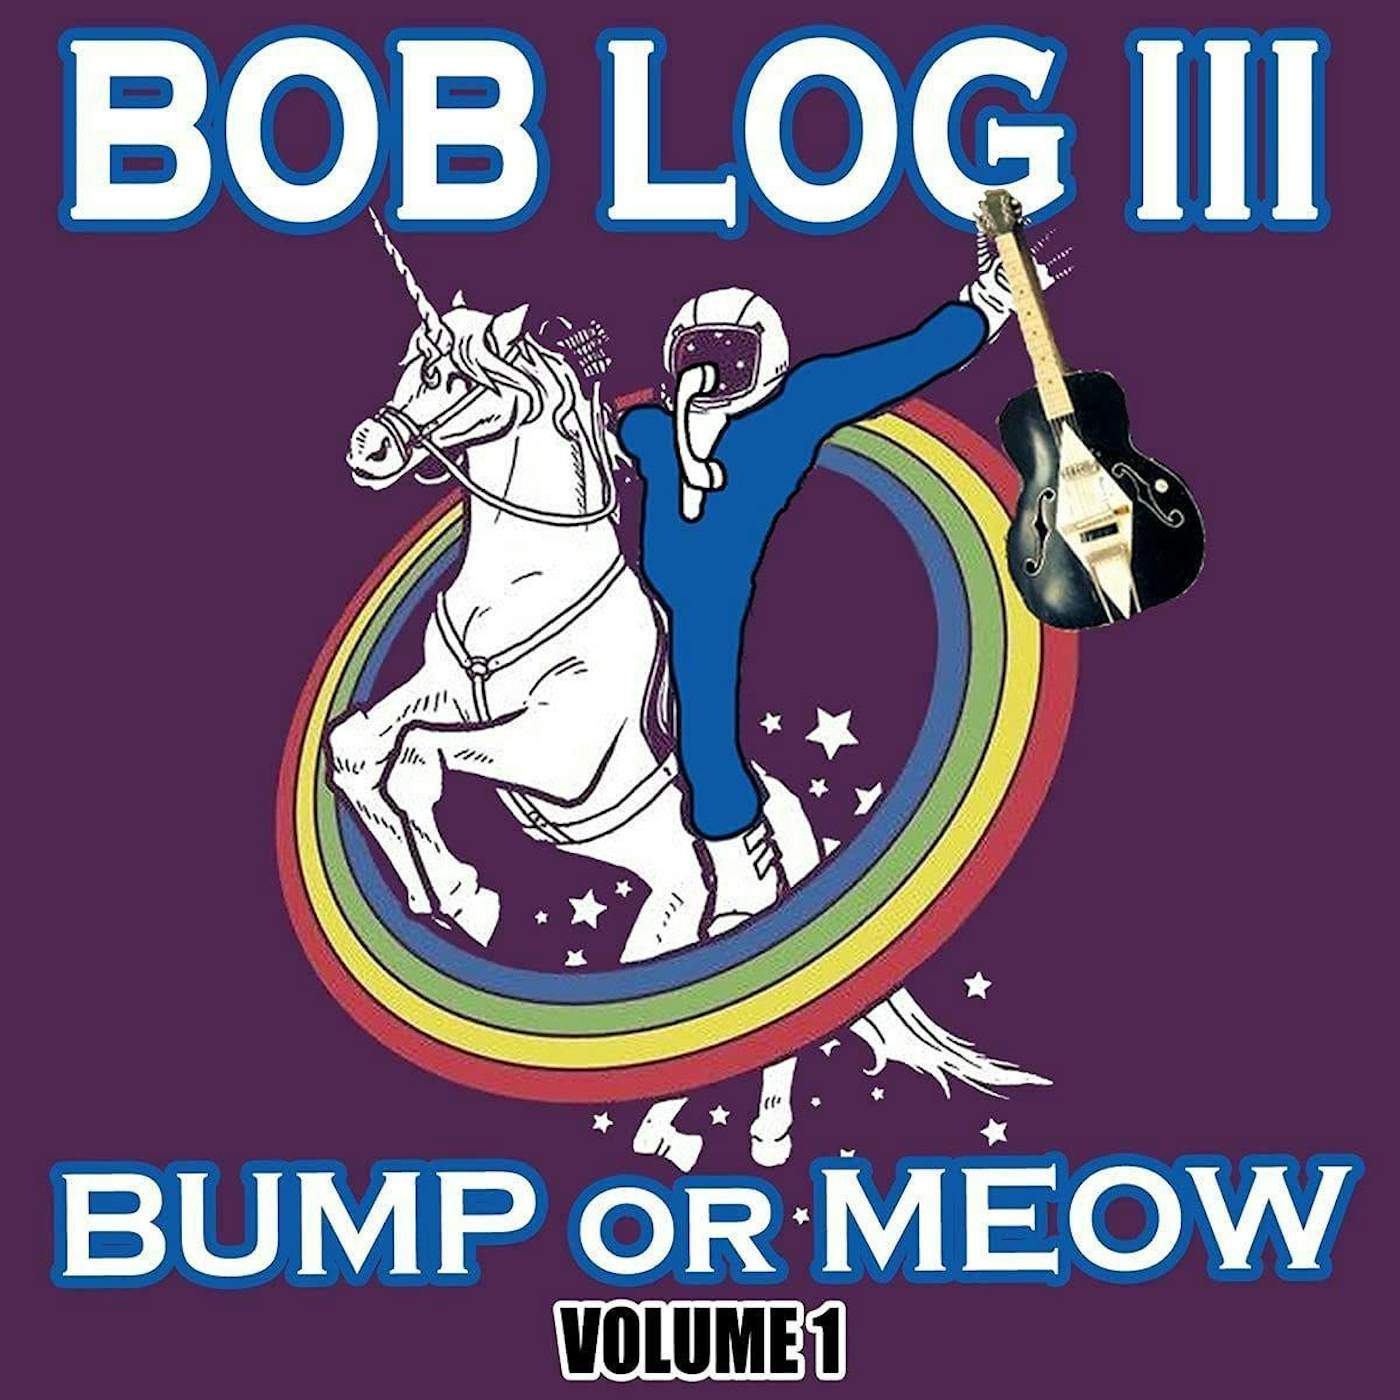 Bob Log III Bump Or Meow Vol.1 (Import) Vinyl Record